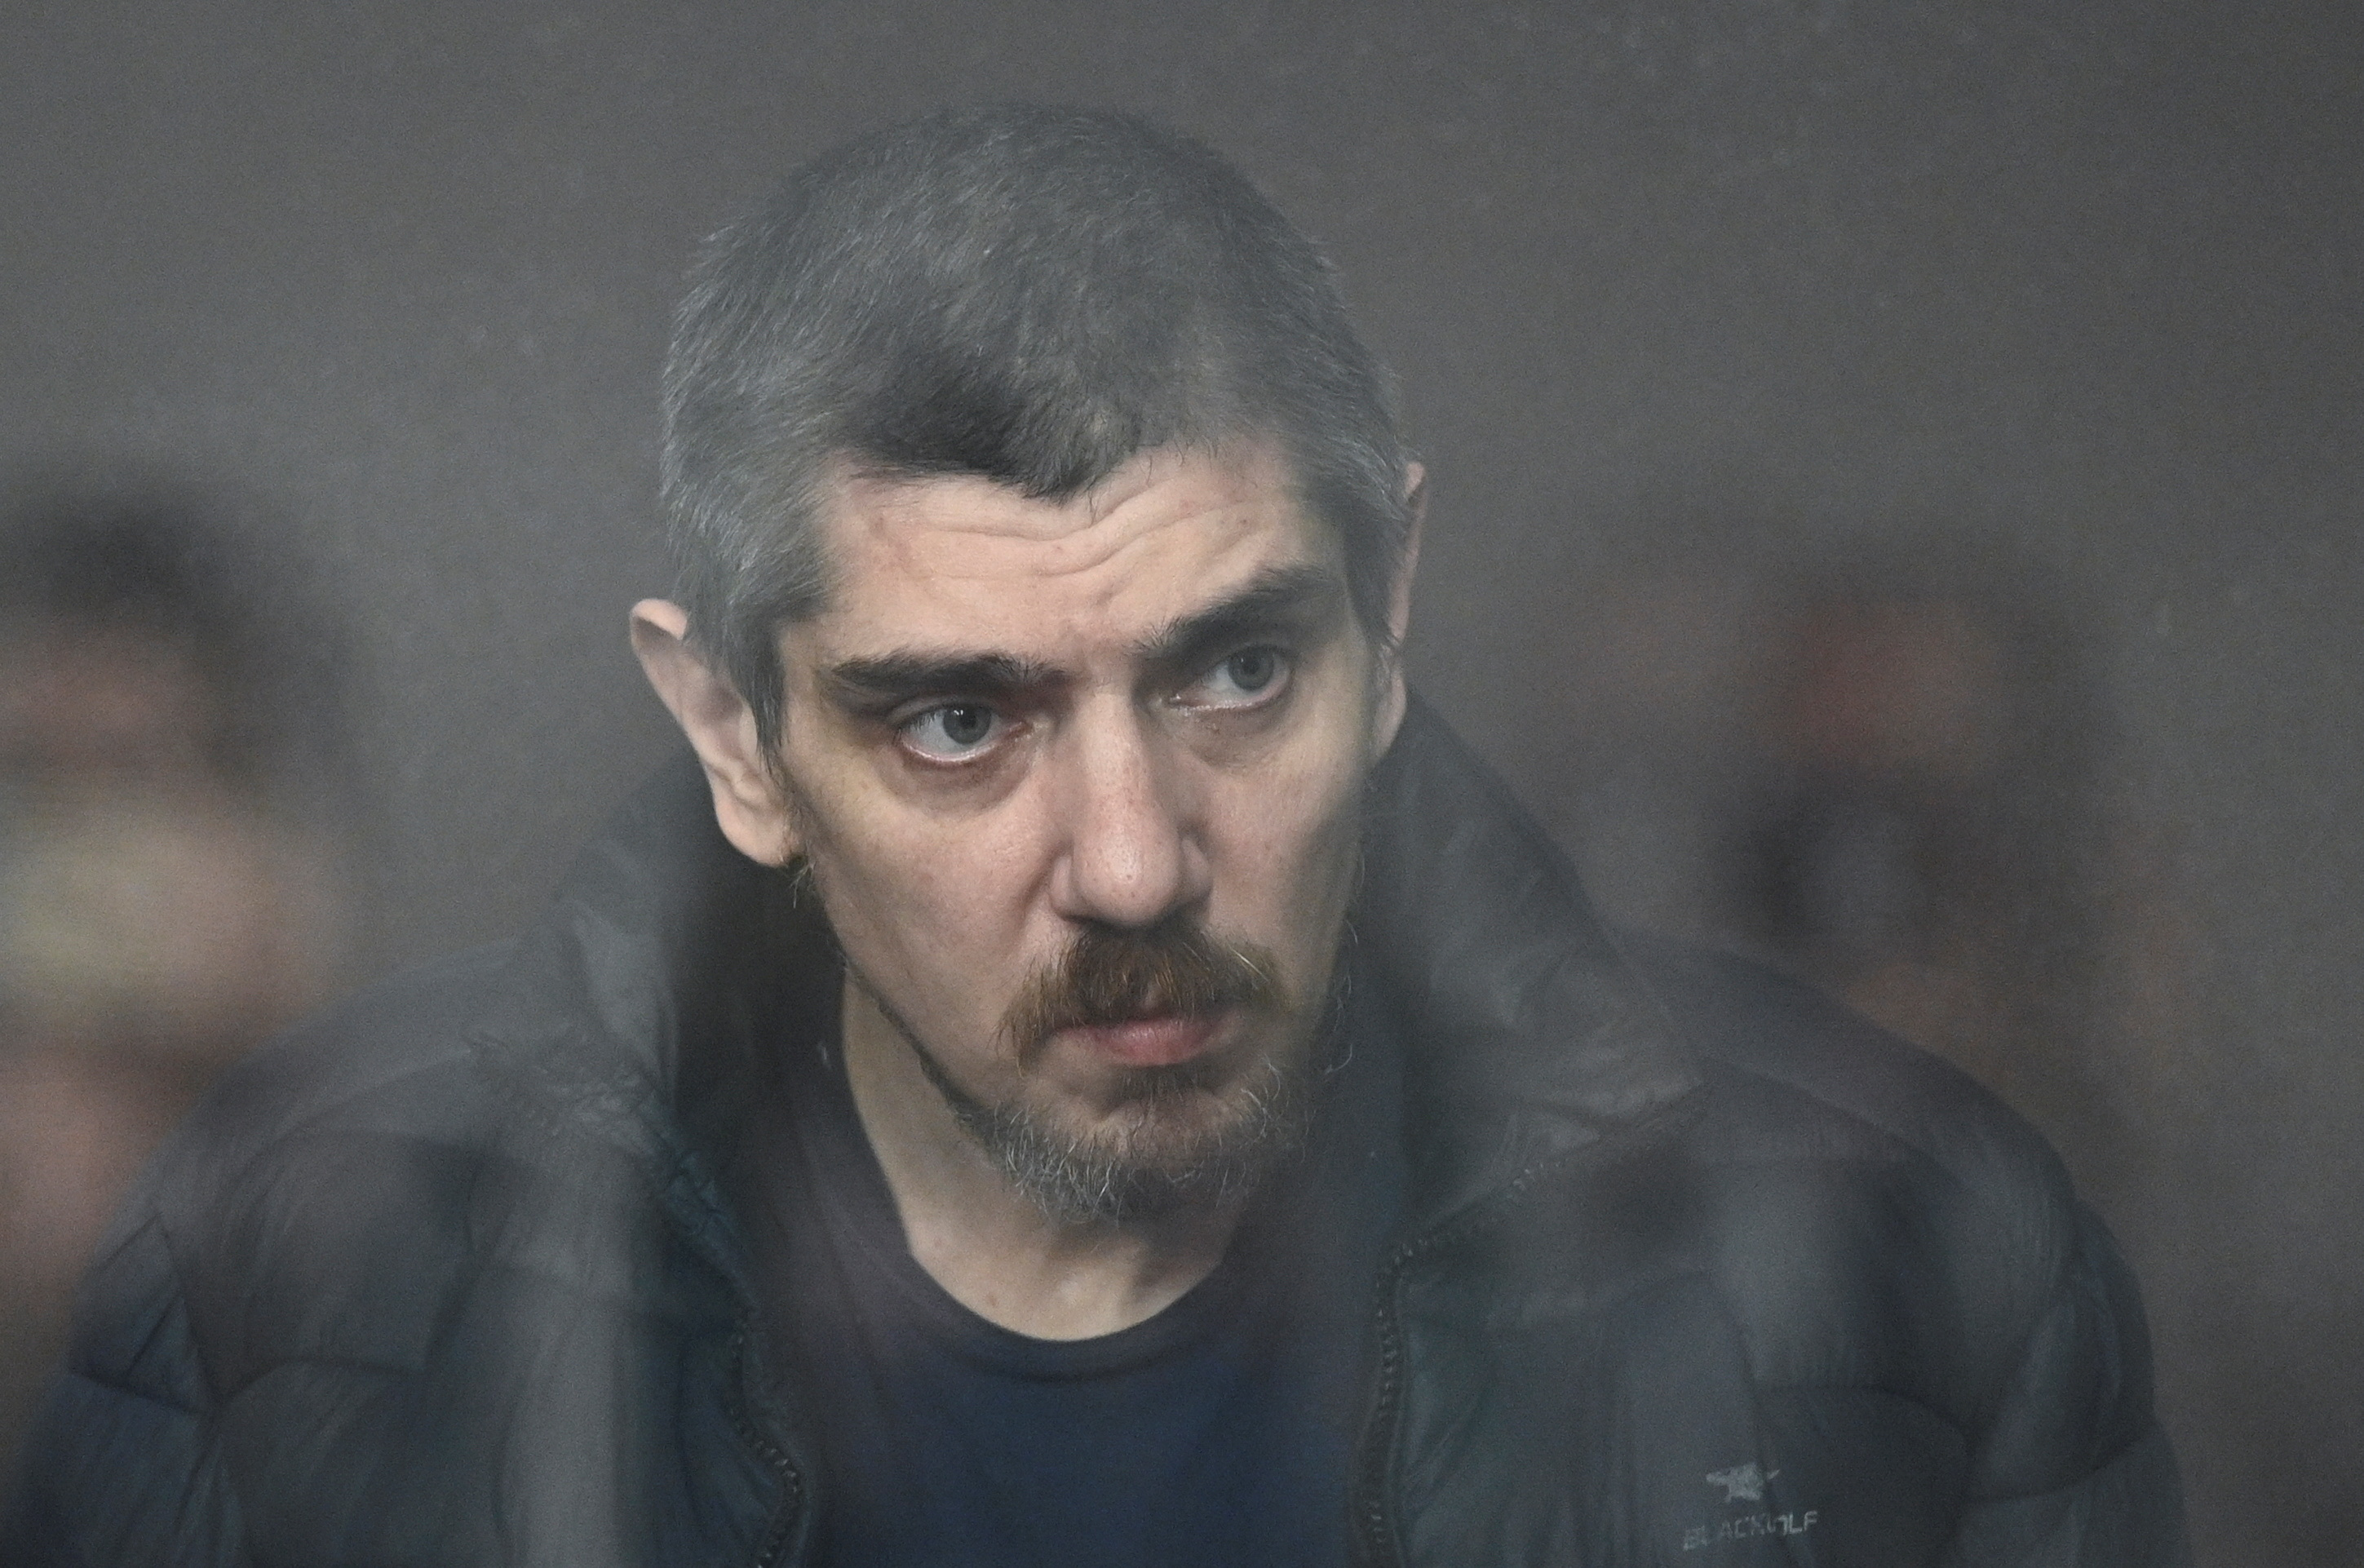 Ένας Ουκρανός στρατιώτης παραδέχεται «εν μέρει ένοχος» στην πρώτη δίκη της Ρωσίας για εγκλήματα πολέμου